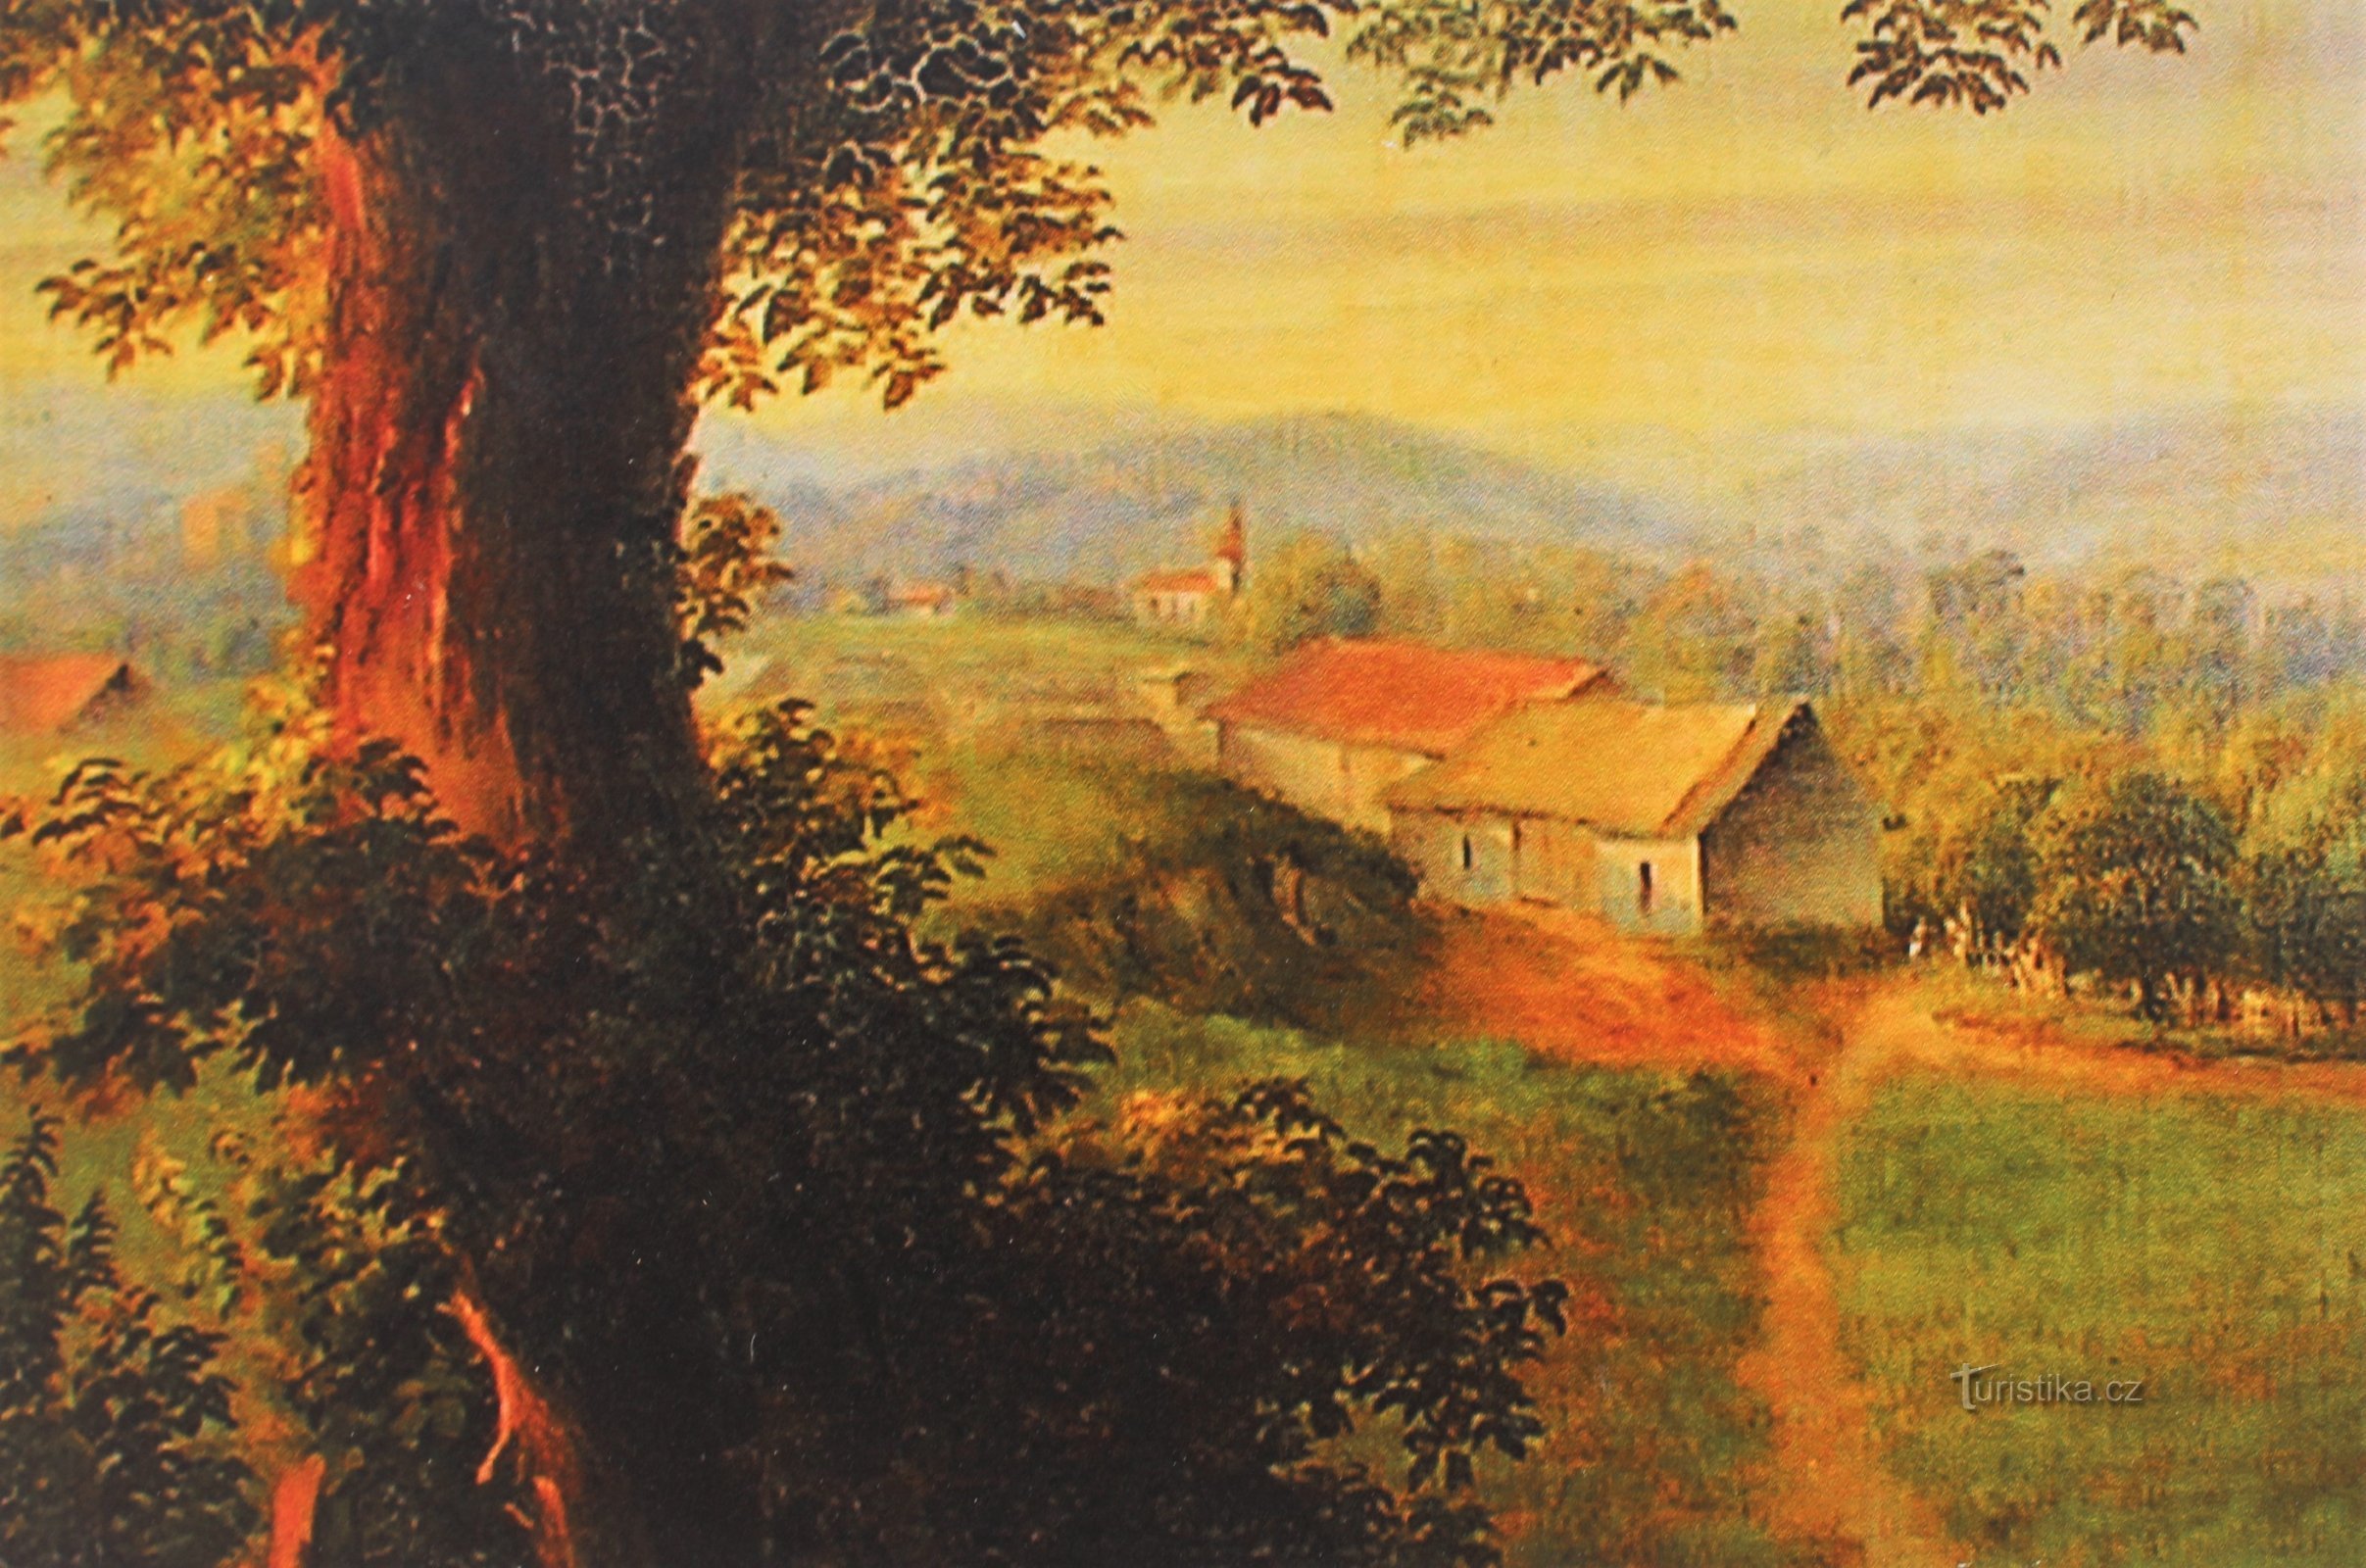 Čeladice lader og bag dem fundamentet af vandskadede huse, udskåret af et maleri fra det 18. århundrede